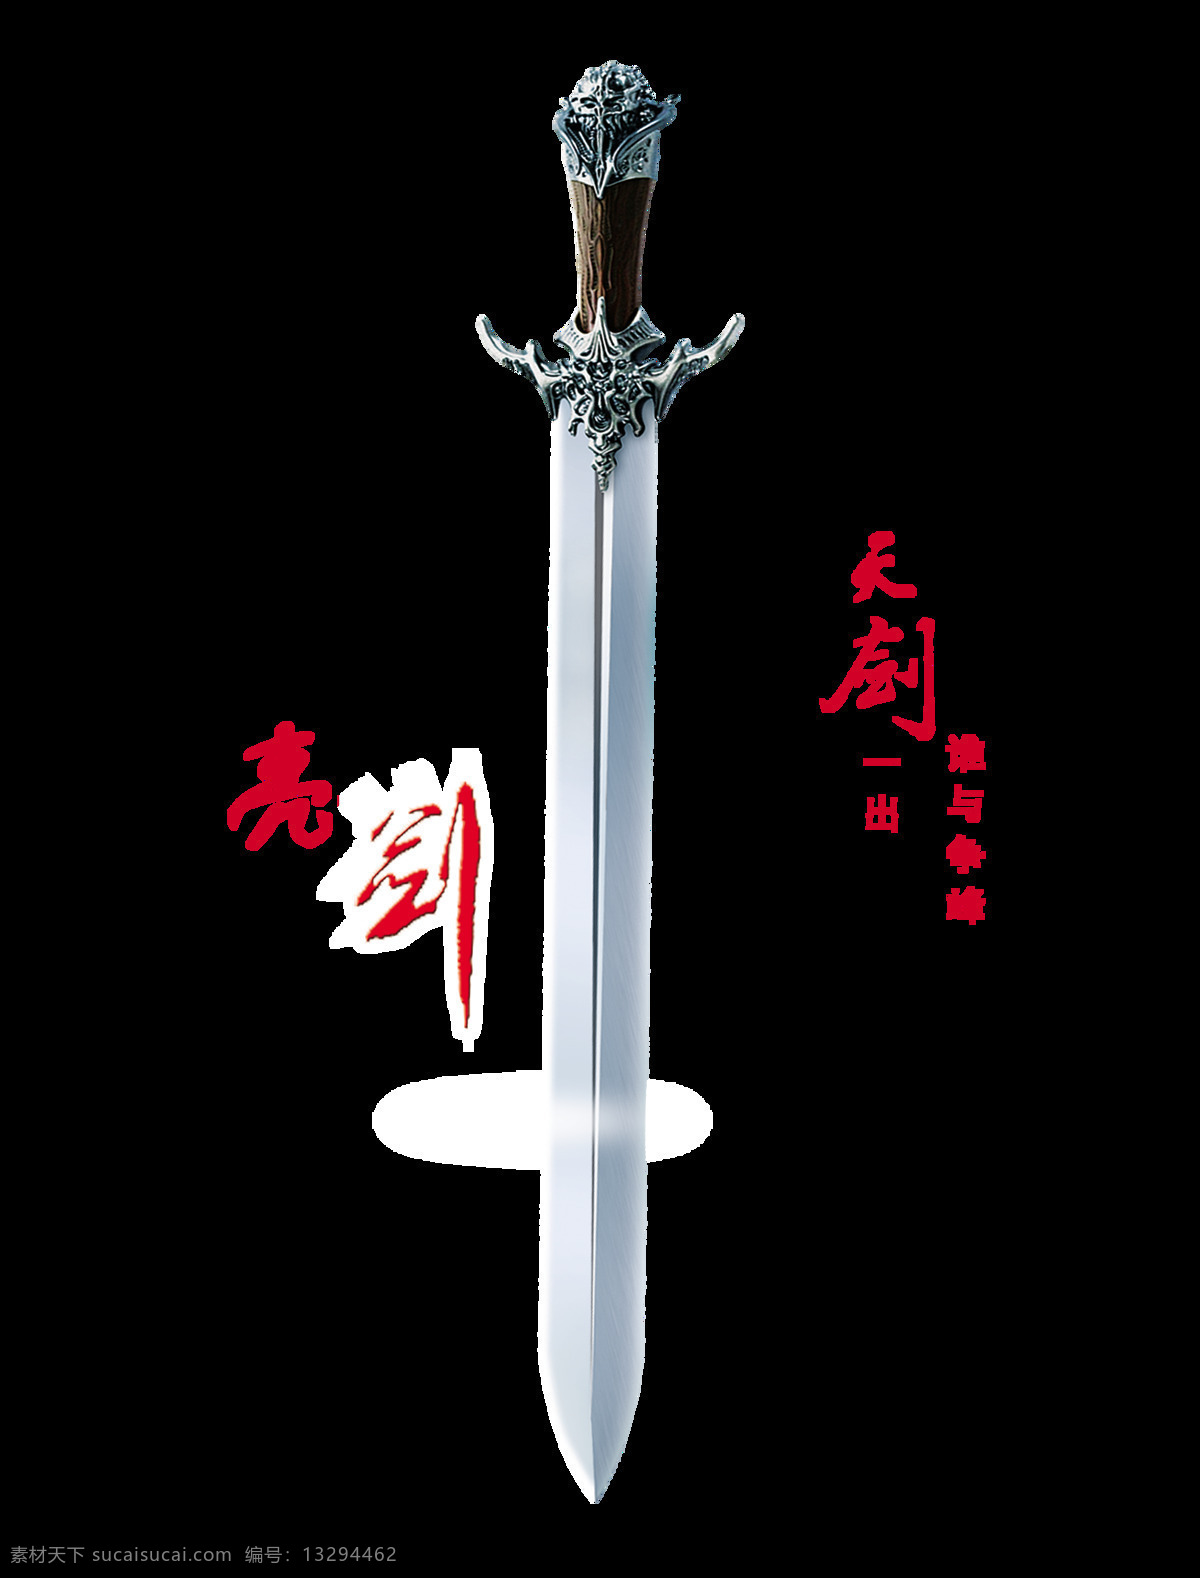 亮 剑 天剑 出 争锋 宝剑 艺术 字 中国 风 中国风 古风 古典 亮剑 天剑一出 谁与争锋 艺术字 海报